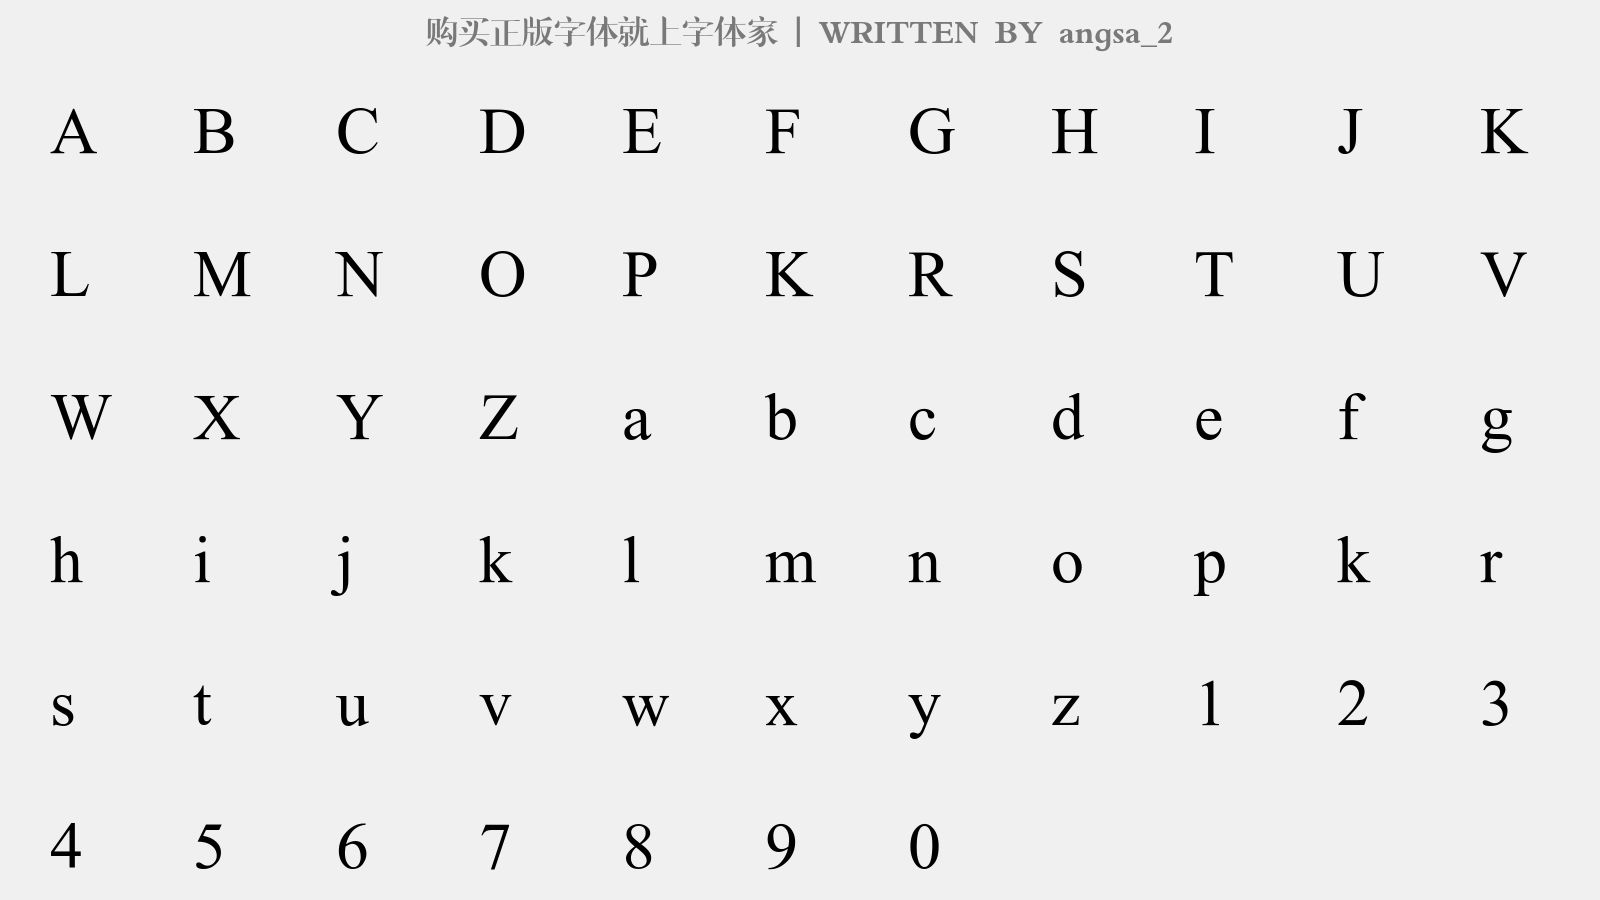 angsa_2 - 大写字母/小写字母/数字